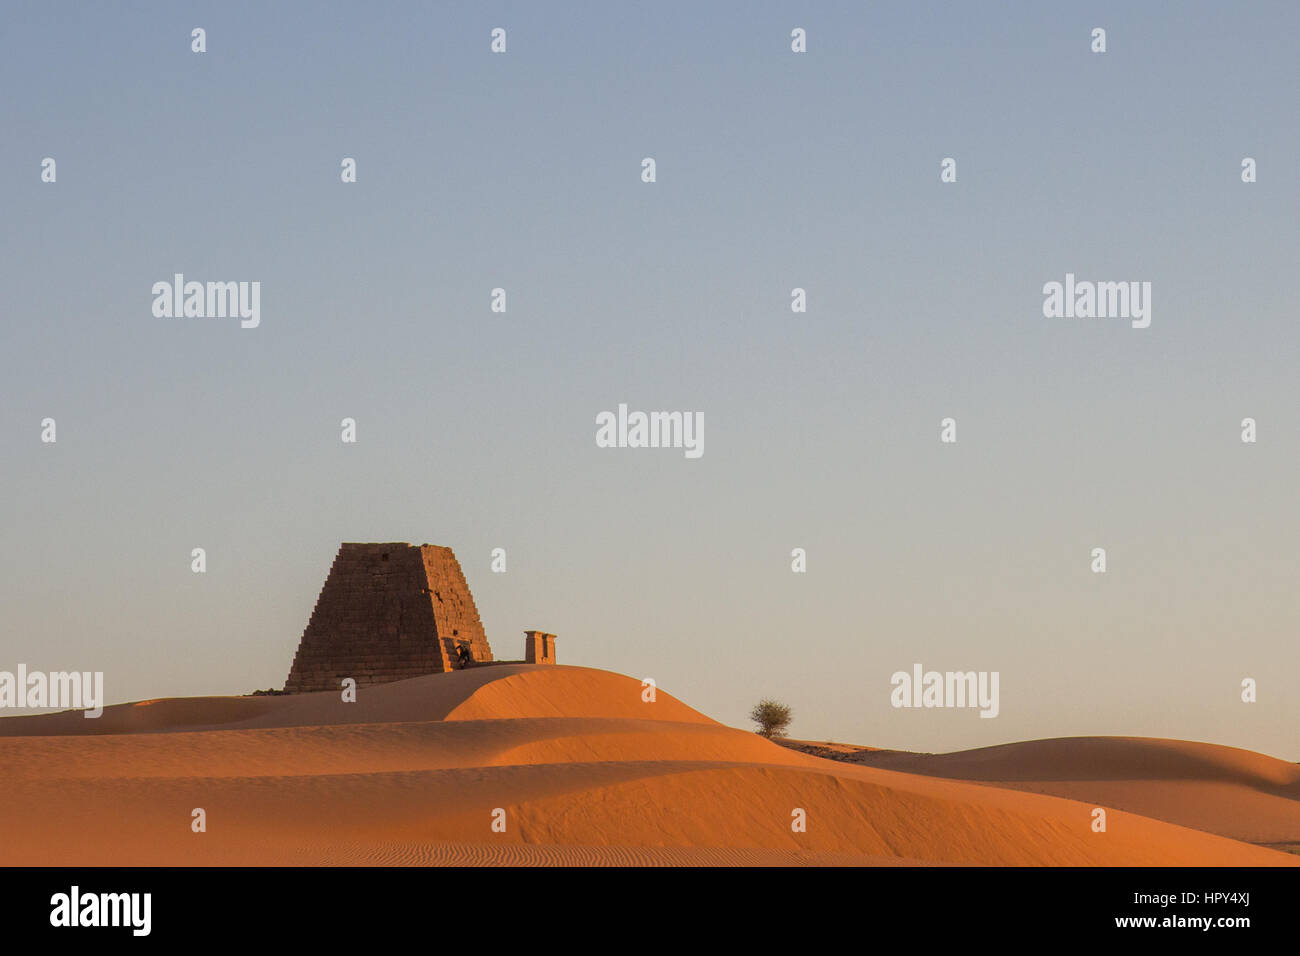 Meroe pyramids at sunrise. Meroe, Sudan. Stock Photo